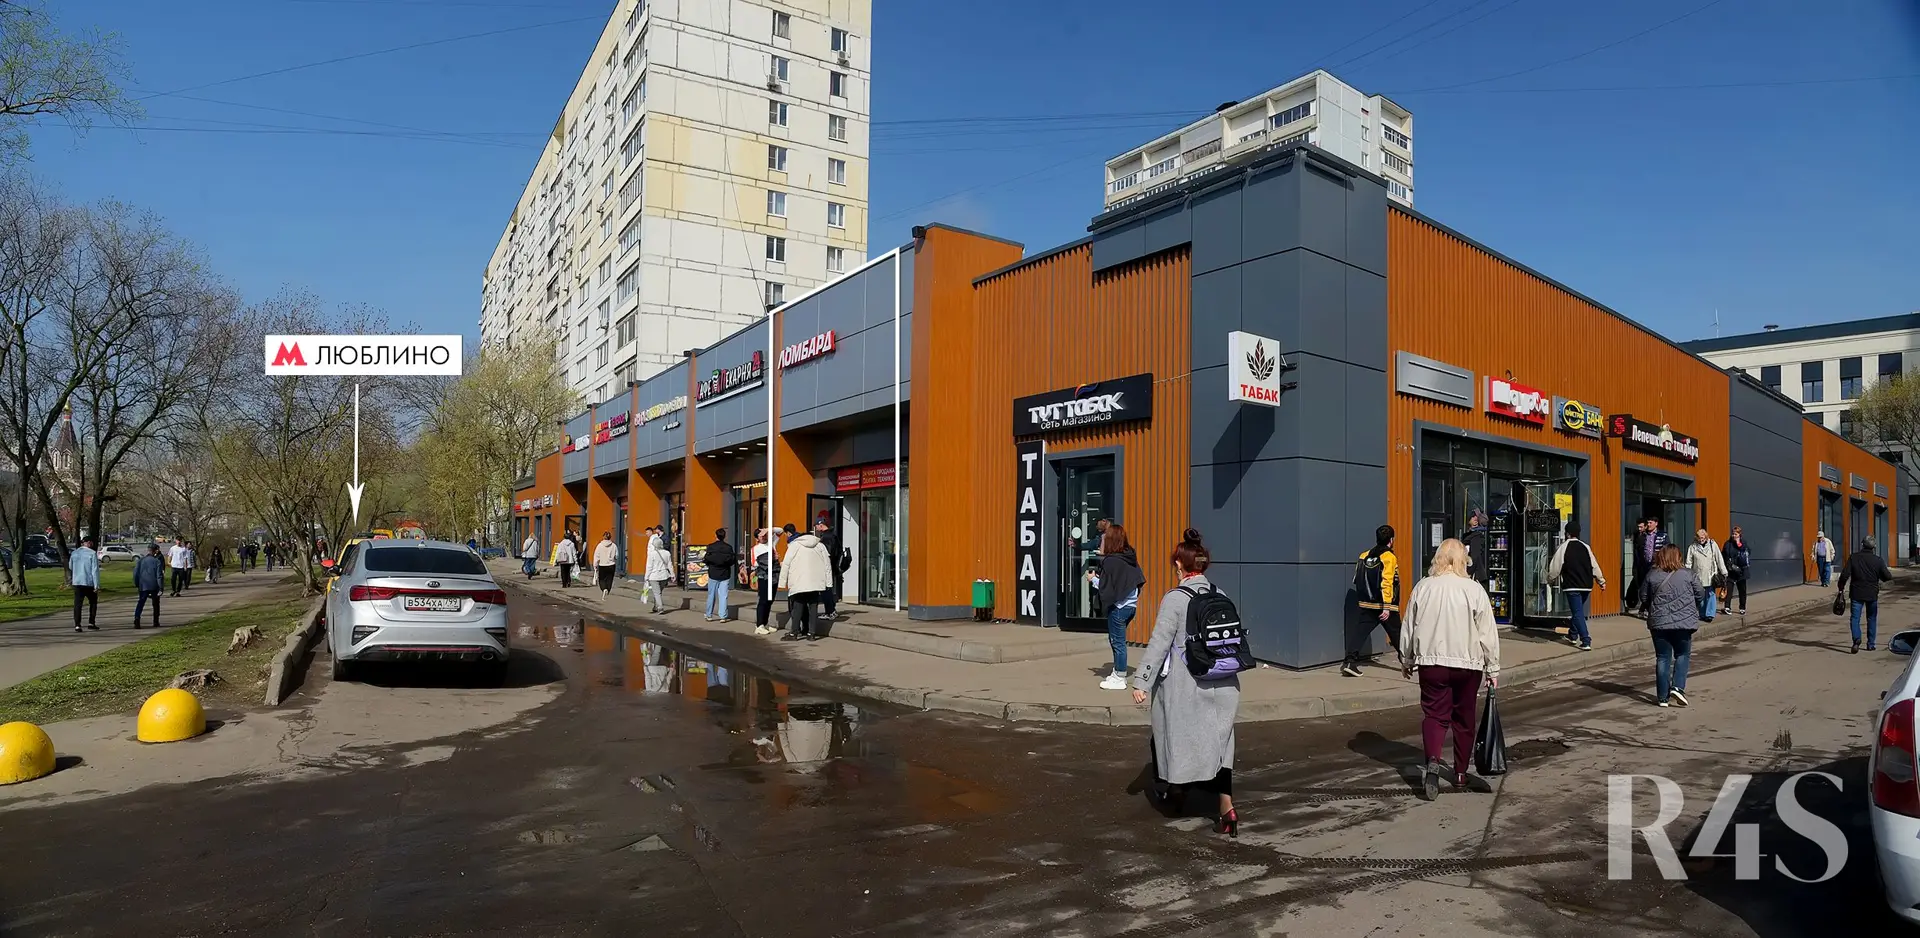 Продажа готового арендного бизнеса площадью 119.5 м2 в Москве: Краснодарская, 57к3 R4S | Realty4Sale